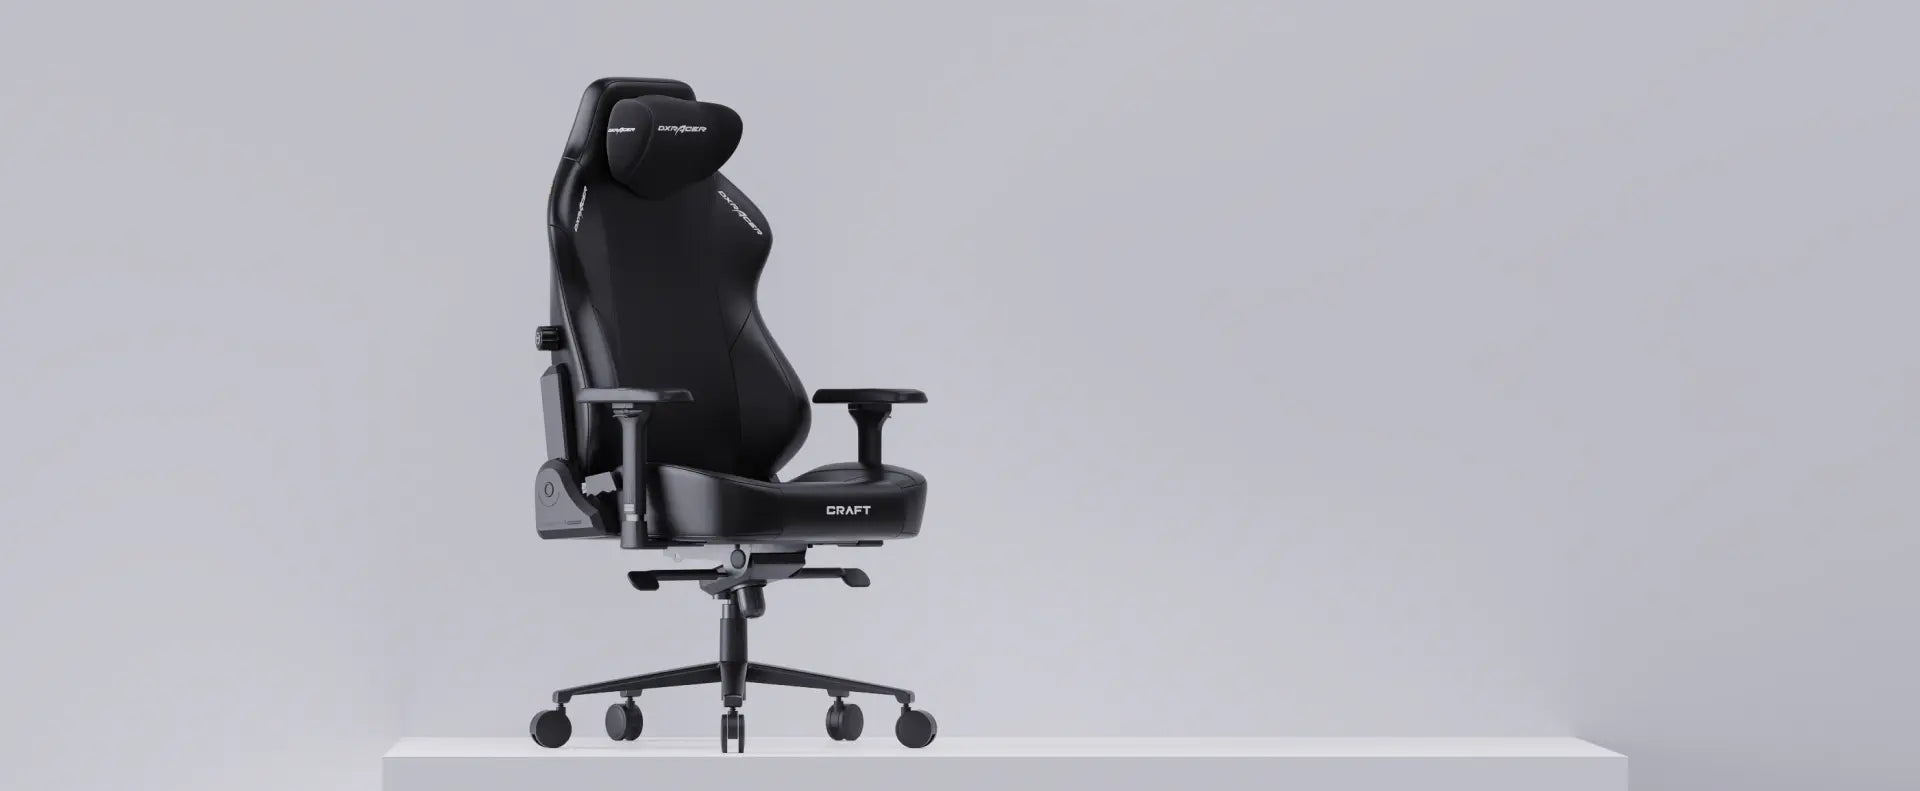 DXRacer | Onlineshop für Gaming-Stühle & Bürostühle